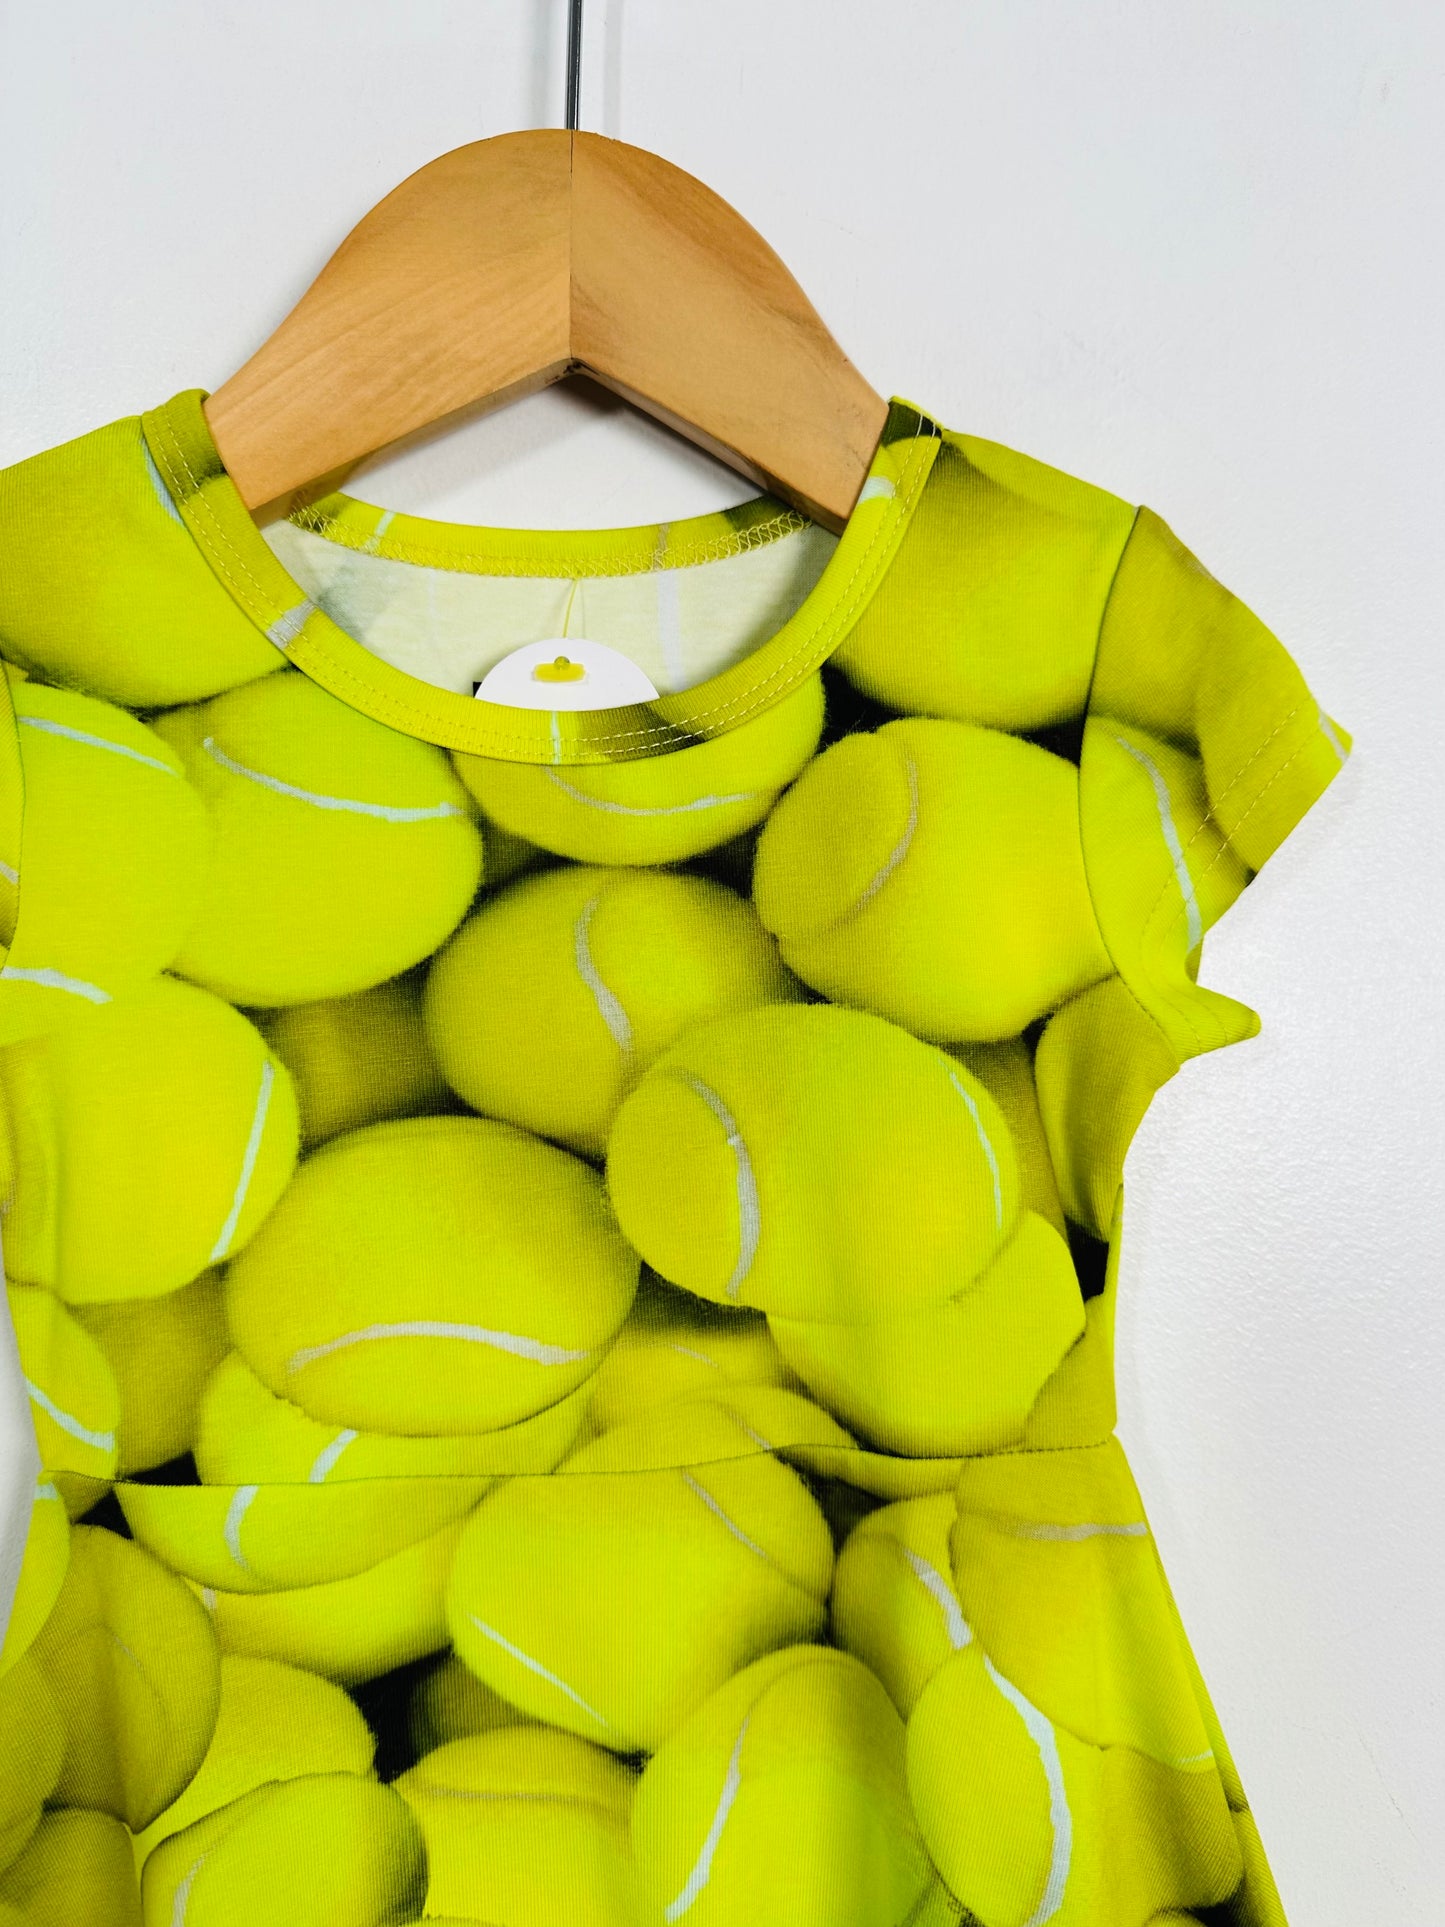 Romey Loves Lulu Tennis Ball Dress / 12M